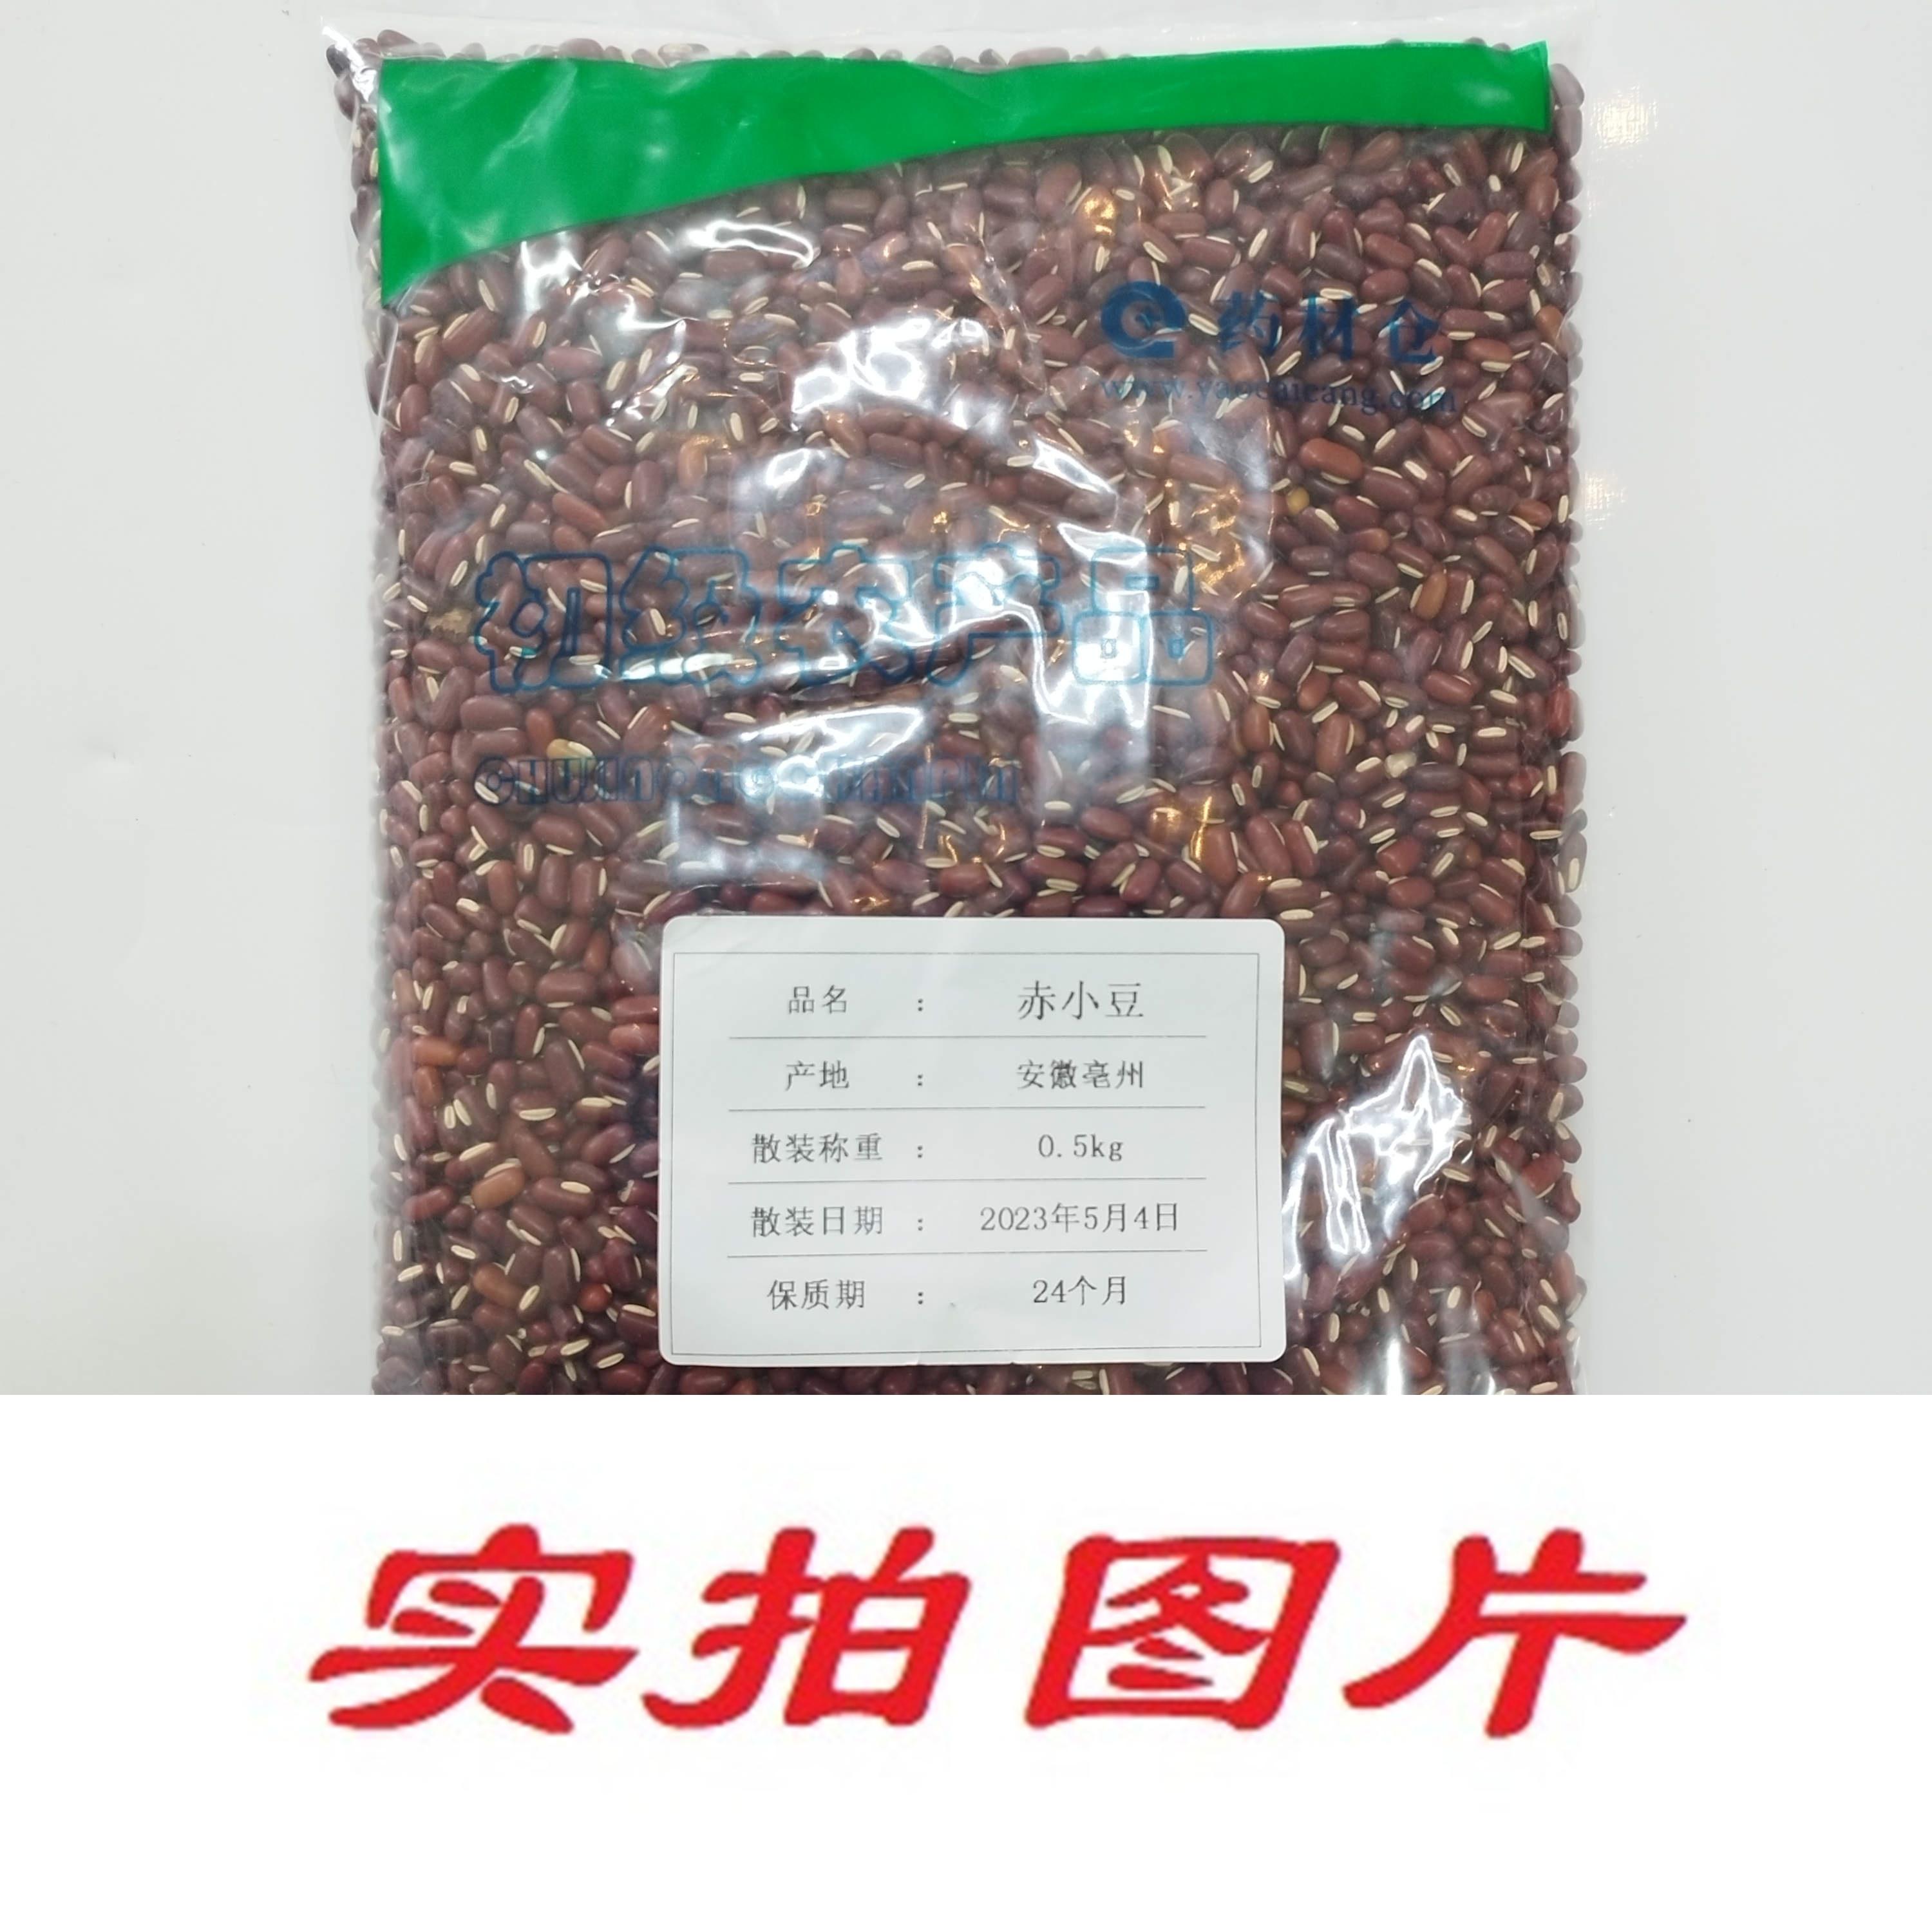 【】赤小豆0.5kg-农副产品